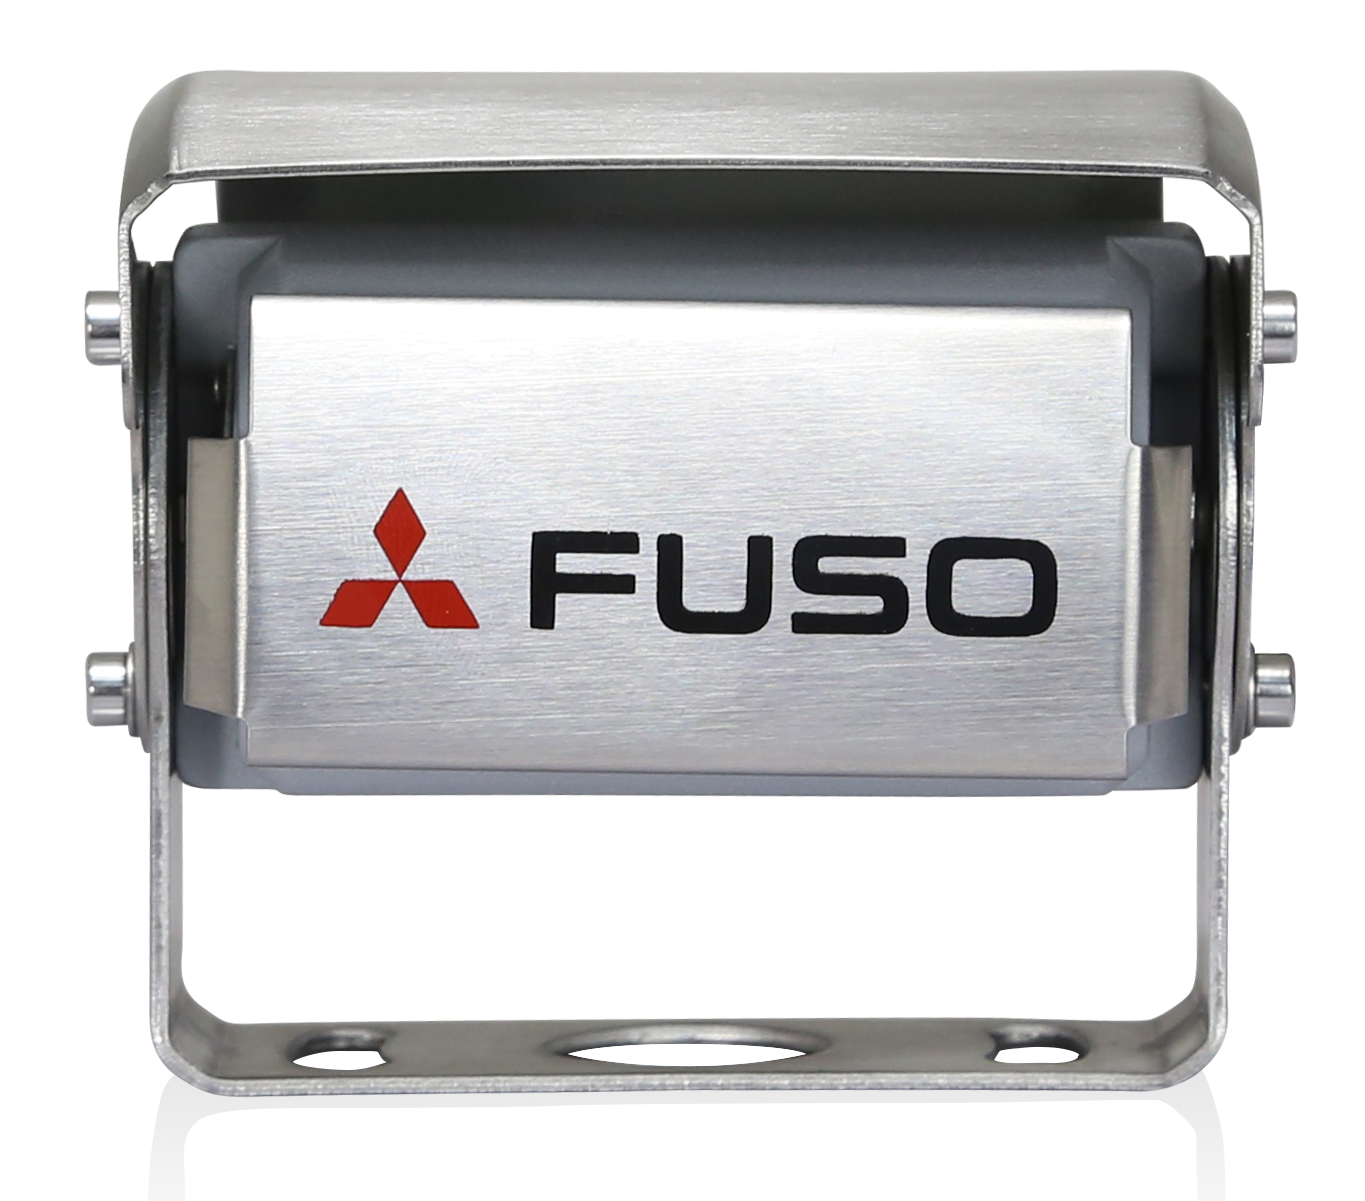 Die FUSO Rückfahrkamera ist ein leistungsfähiges Produkt, das die Vorteile bester Sicht und höchster Sicherheit vereint. Sie verfügt über ein integriertes Mikrofon, das für eine verbesserte Wahrnehmung des Bereichs hinter dem Fahrzeug sorgt. Bei Dunkelheit wird die Displayfarbe automatisch geändert, um dem Fahrer eine optimale Sicht zu ermöglichen. Das System kann mit 12 und 24 V betrieben werden und erfüllt strengste FUSO Prüf-anforderungen. Die Kamera ist wasserdicht gemäß IP69K. Das Display besitzt eine Auflösung von 800x480x3 (RGB).